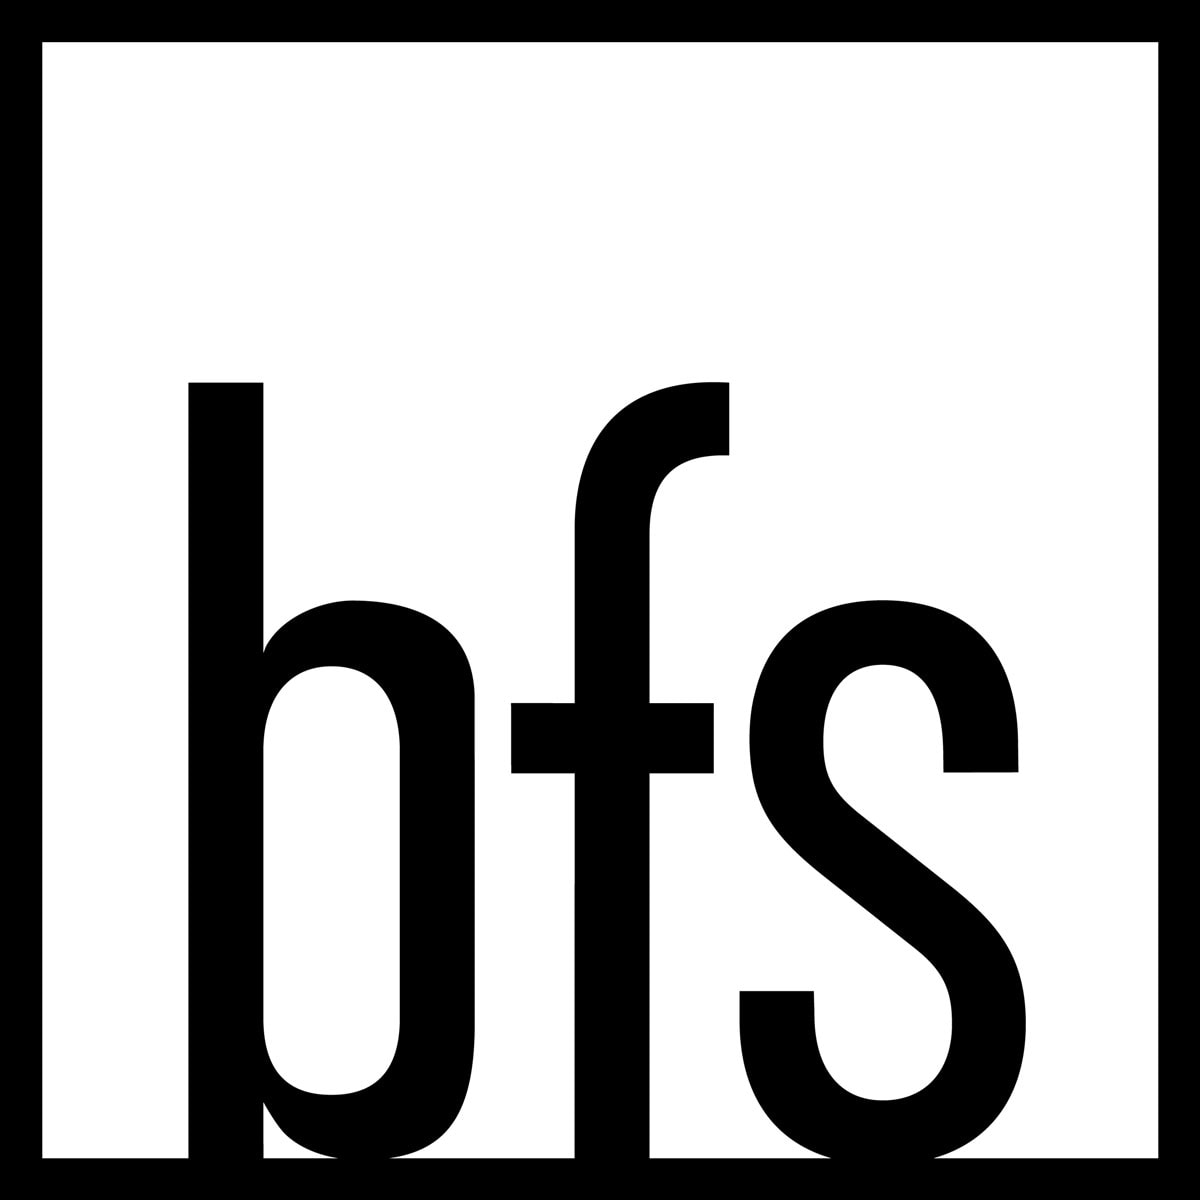 Bfs Landscape Architects Brandmark Monotone White Dark Bg